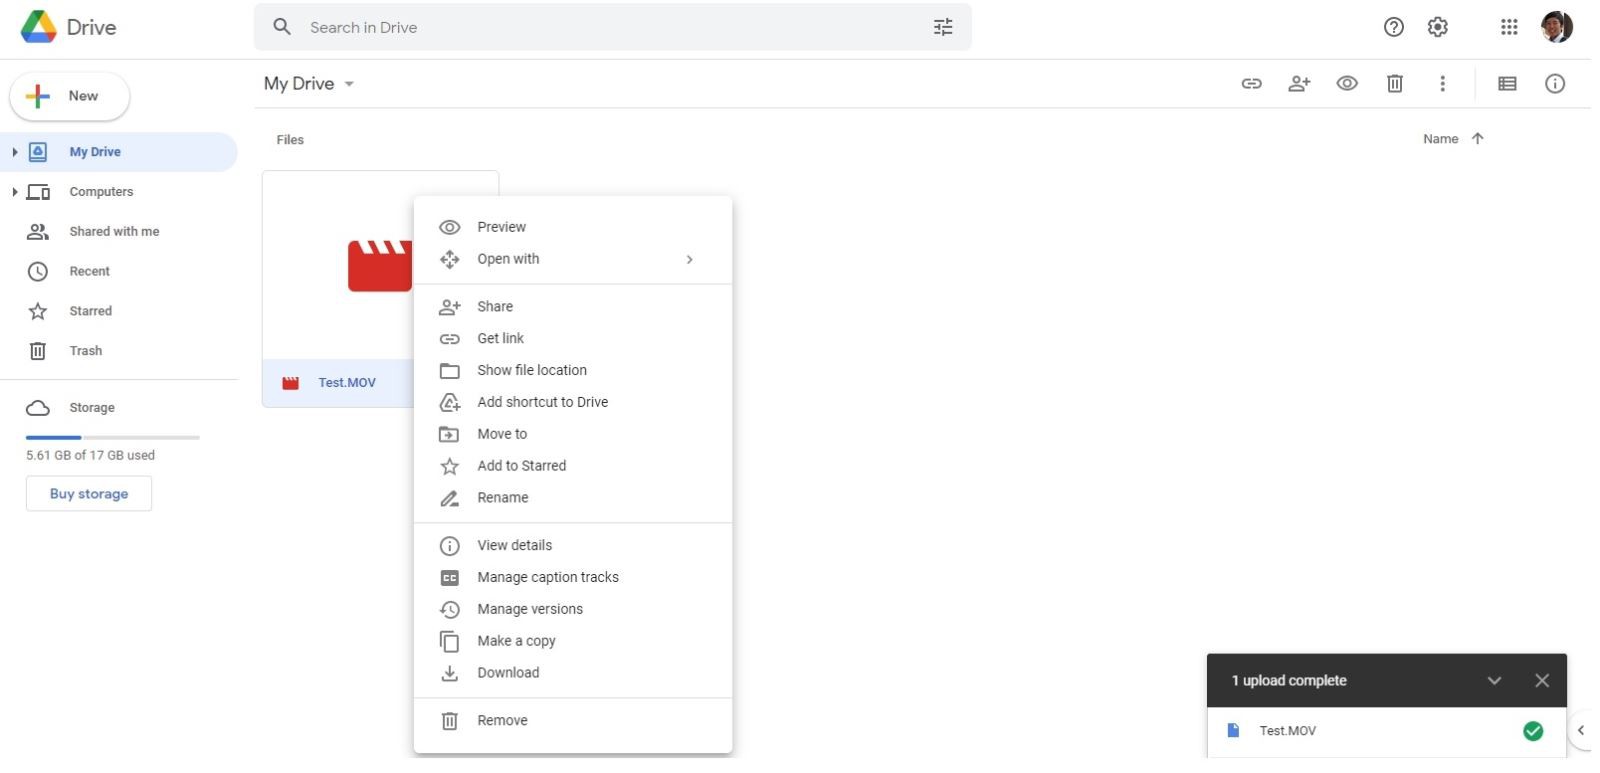 Hướng dẫn sử dụng Google Drive trên trình duyệt web